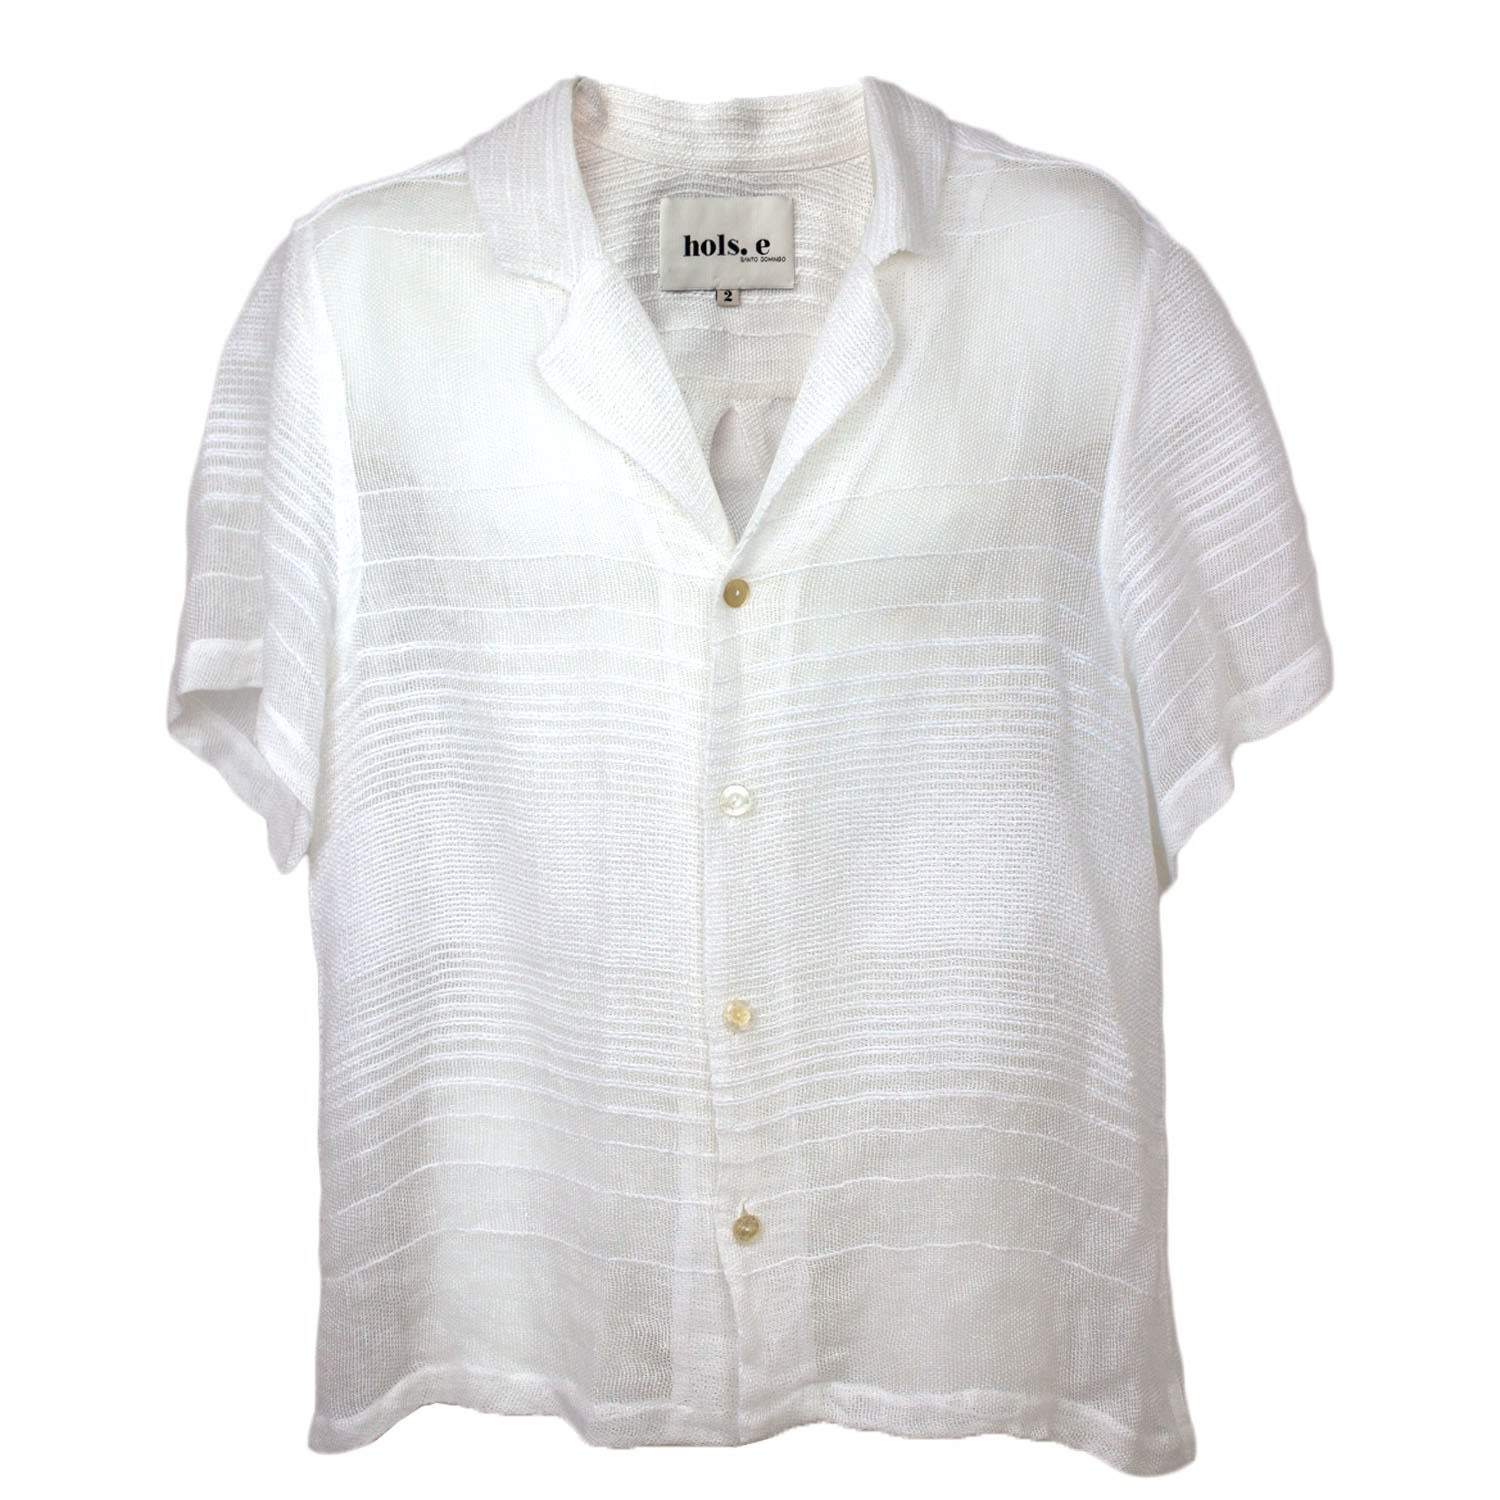 Men's White Quanta Woven Shirt Medium hols. e